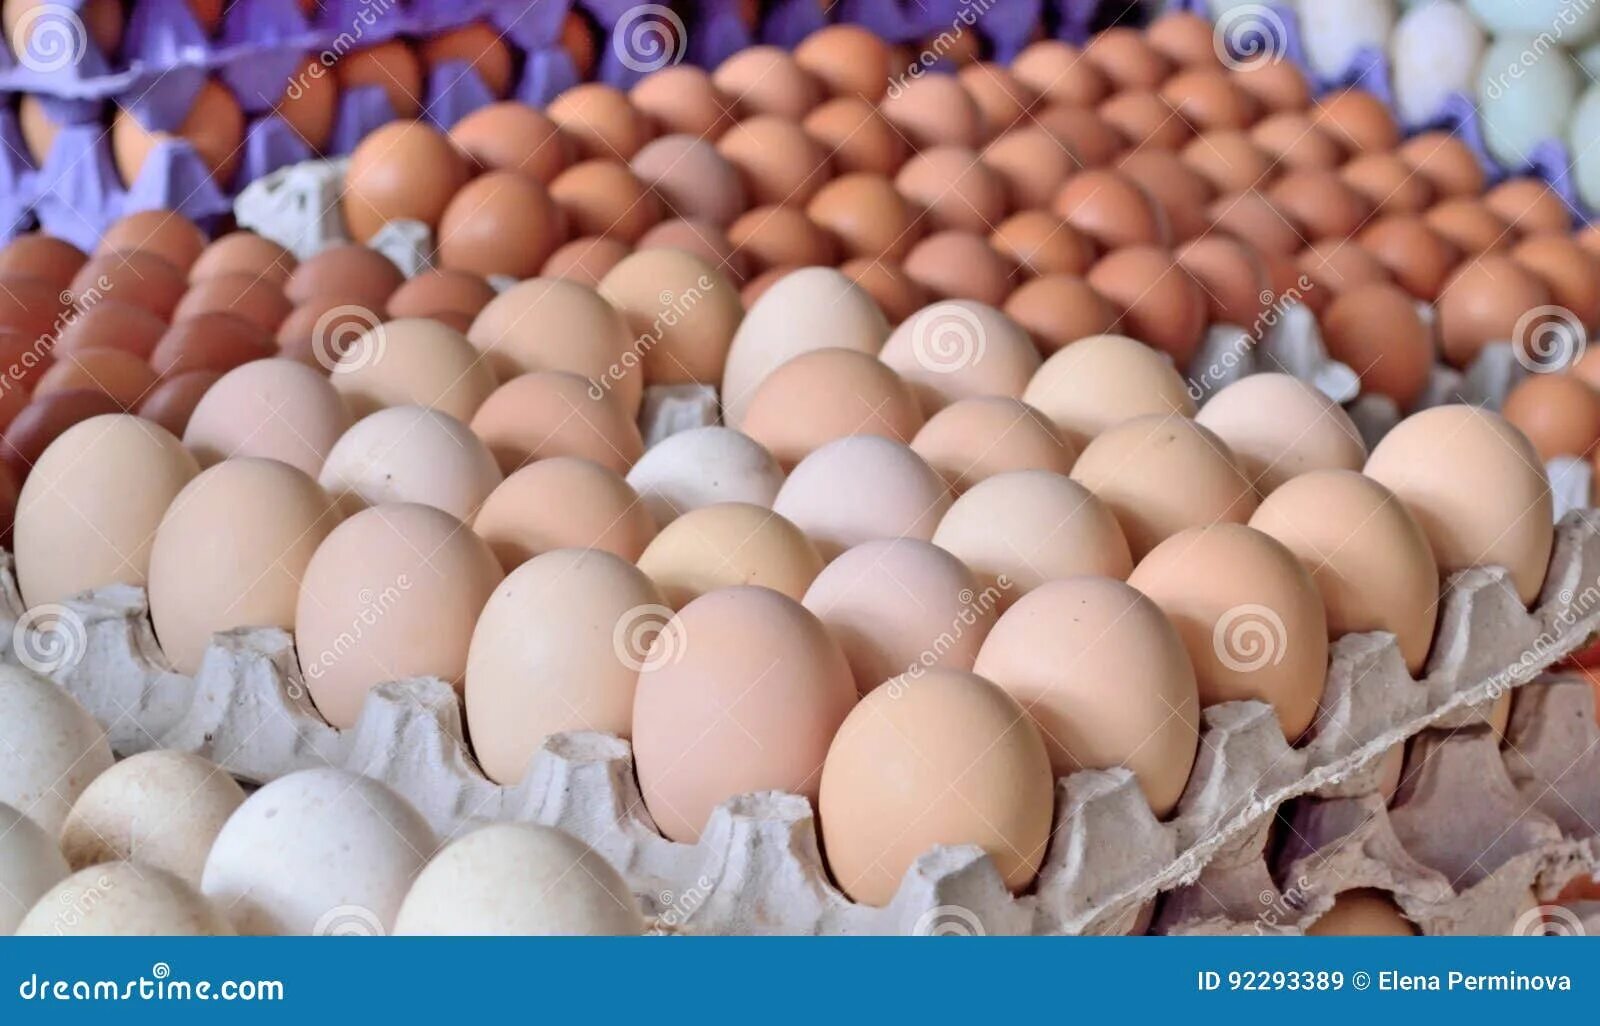 К чему снится собирать много куриных яиц. Яйцо куриное. Куриные яйца в рынке. Яйцо домашнее куриное. Склад яиц.